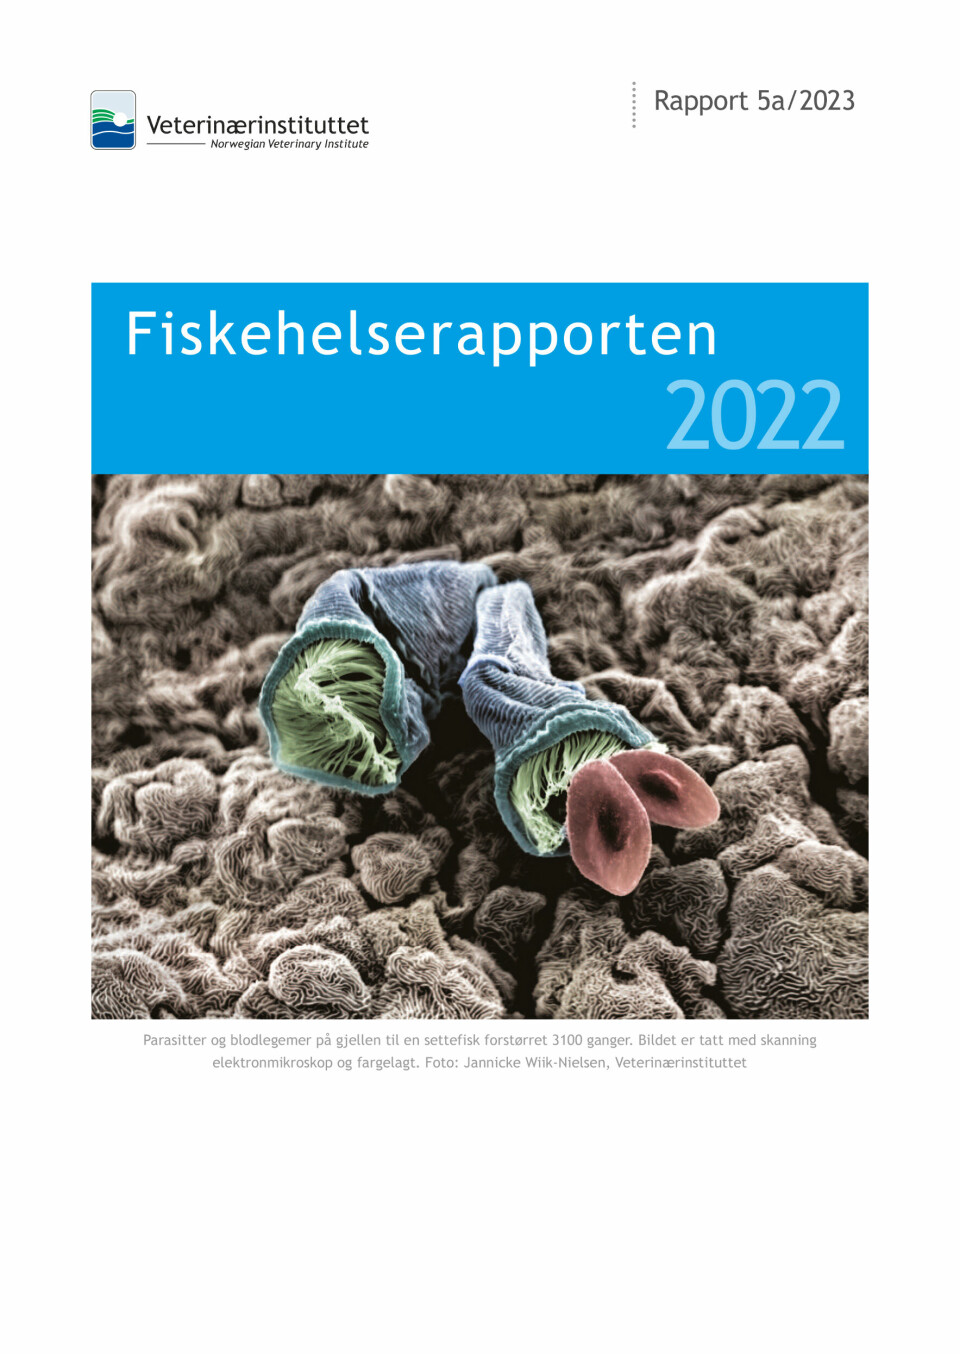 Fiskehelserapporten 2022